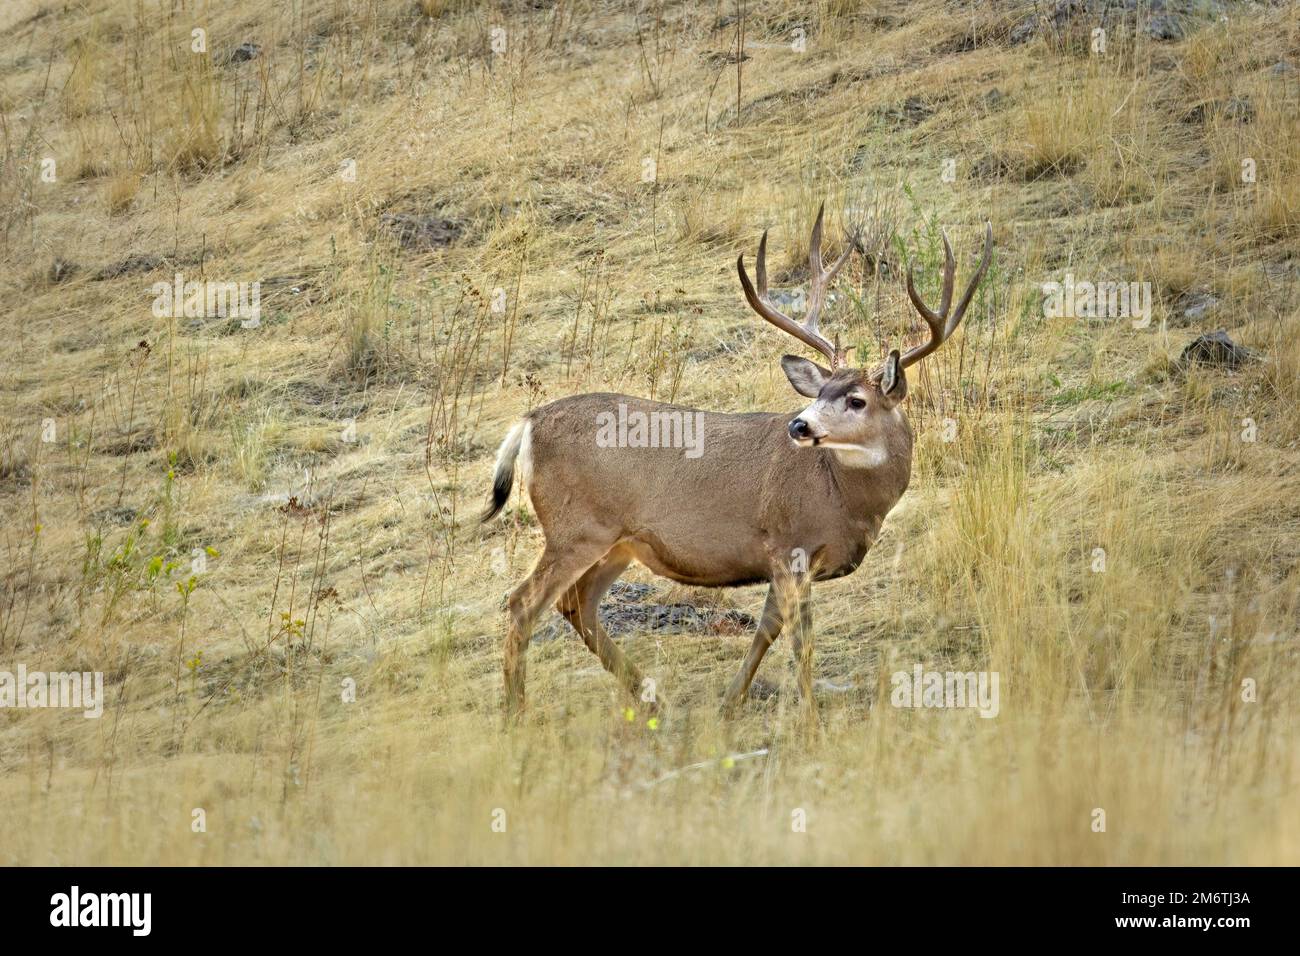 Mule deer in the field in Montana Stock Photo - Alamy